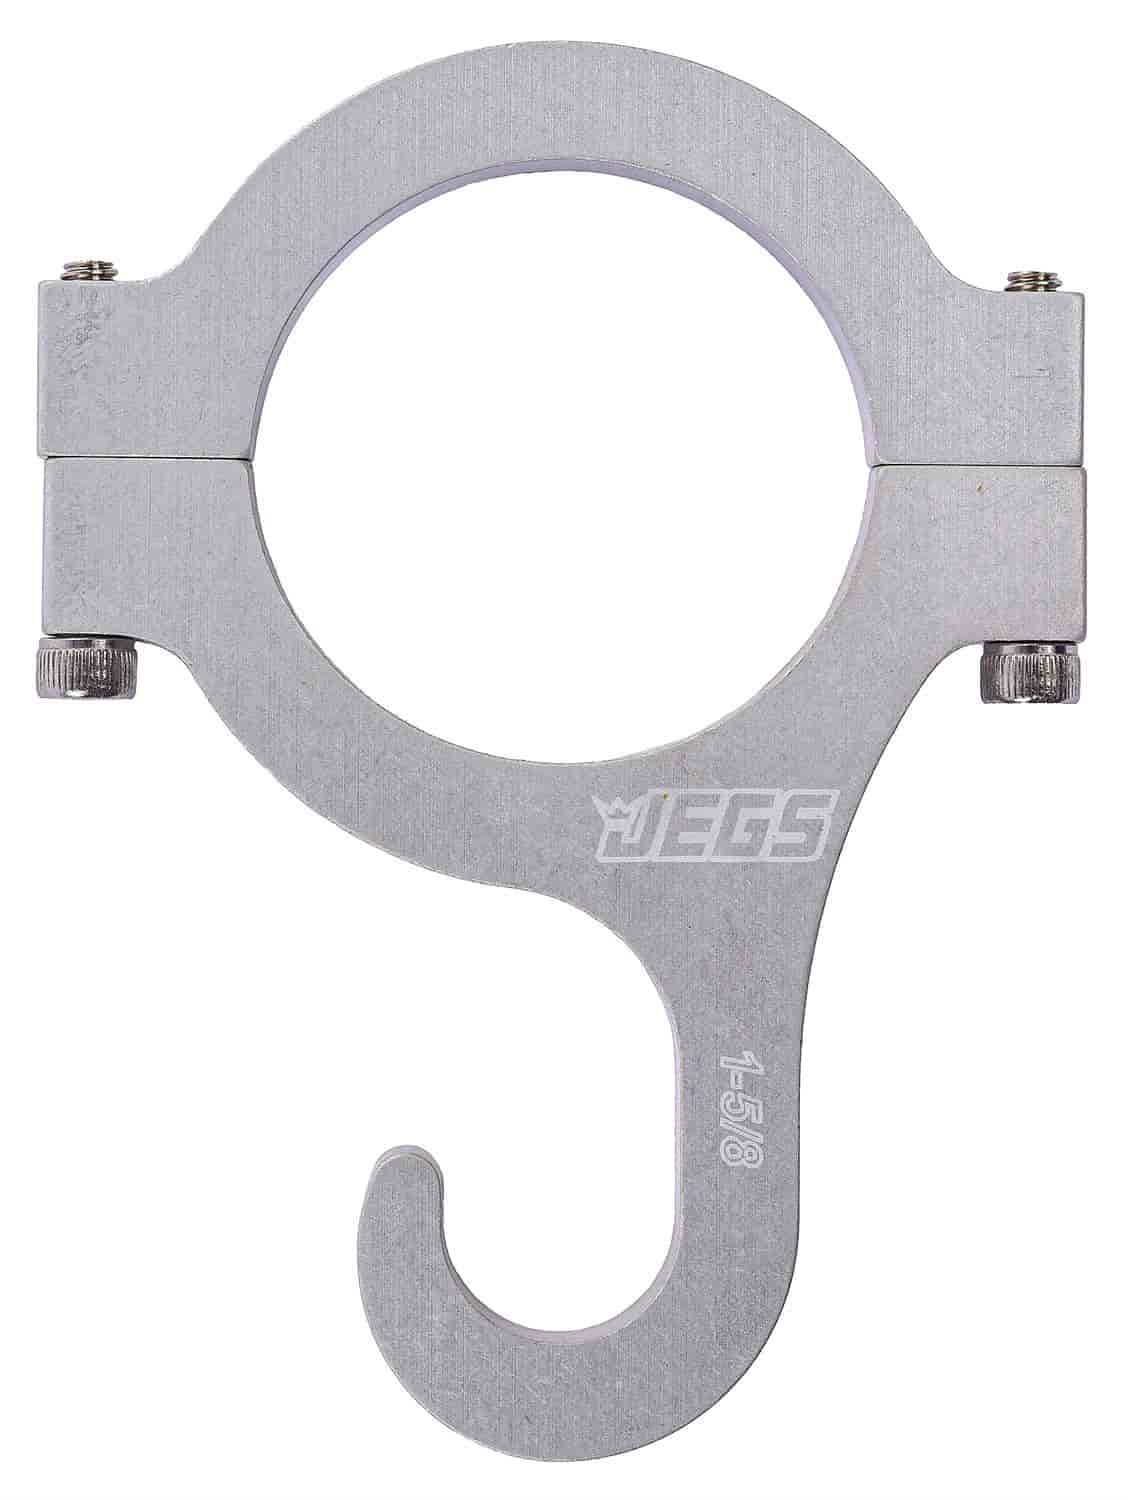 Billet Aluminum Roll Bar Mount Helmet Hook Fits 1-5/8" Diameter Roll Bars